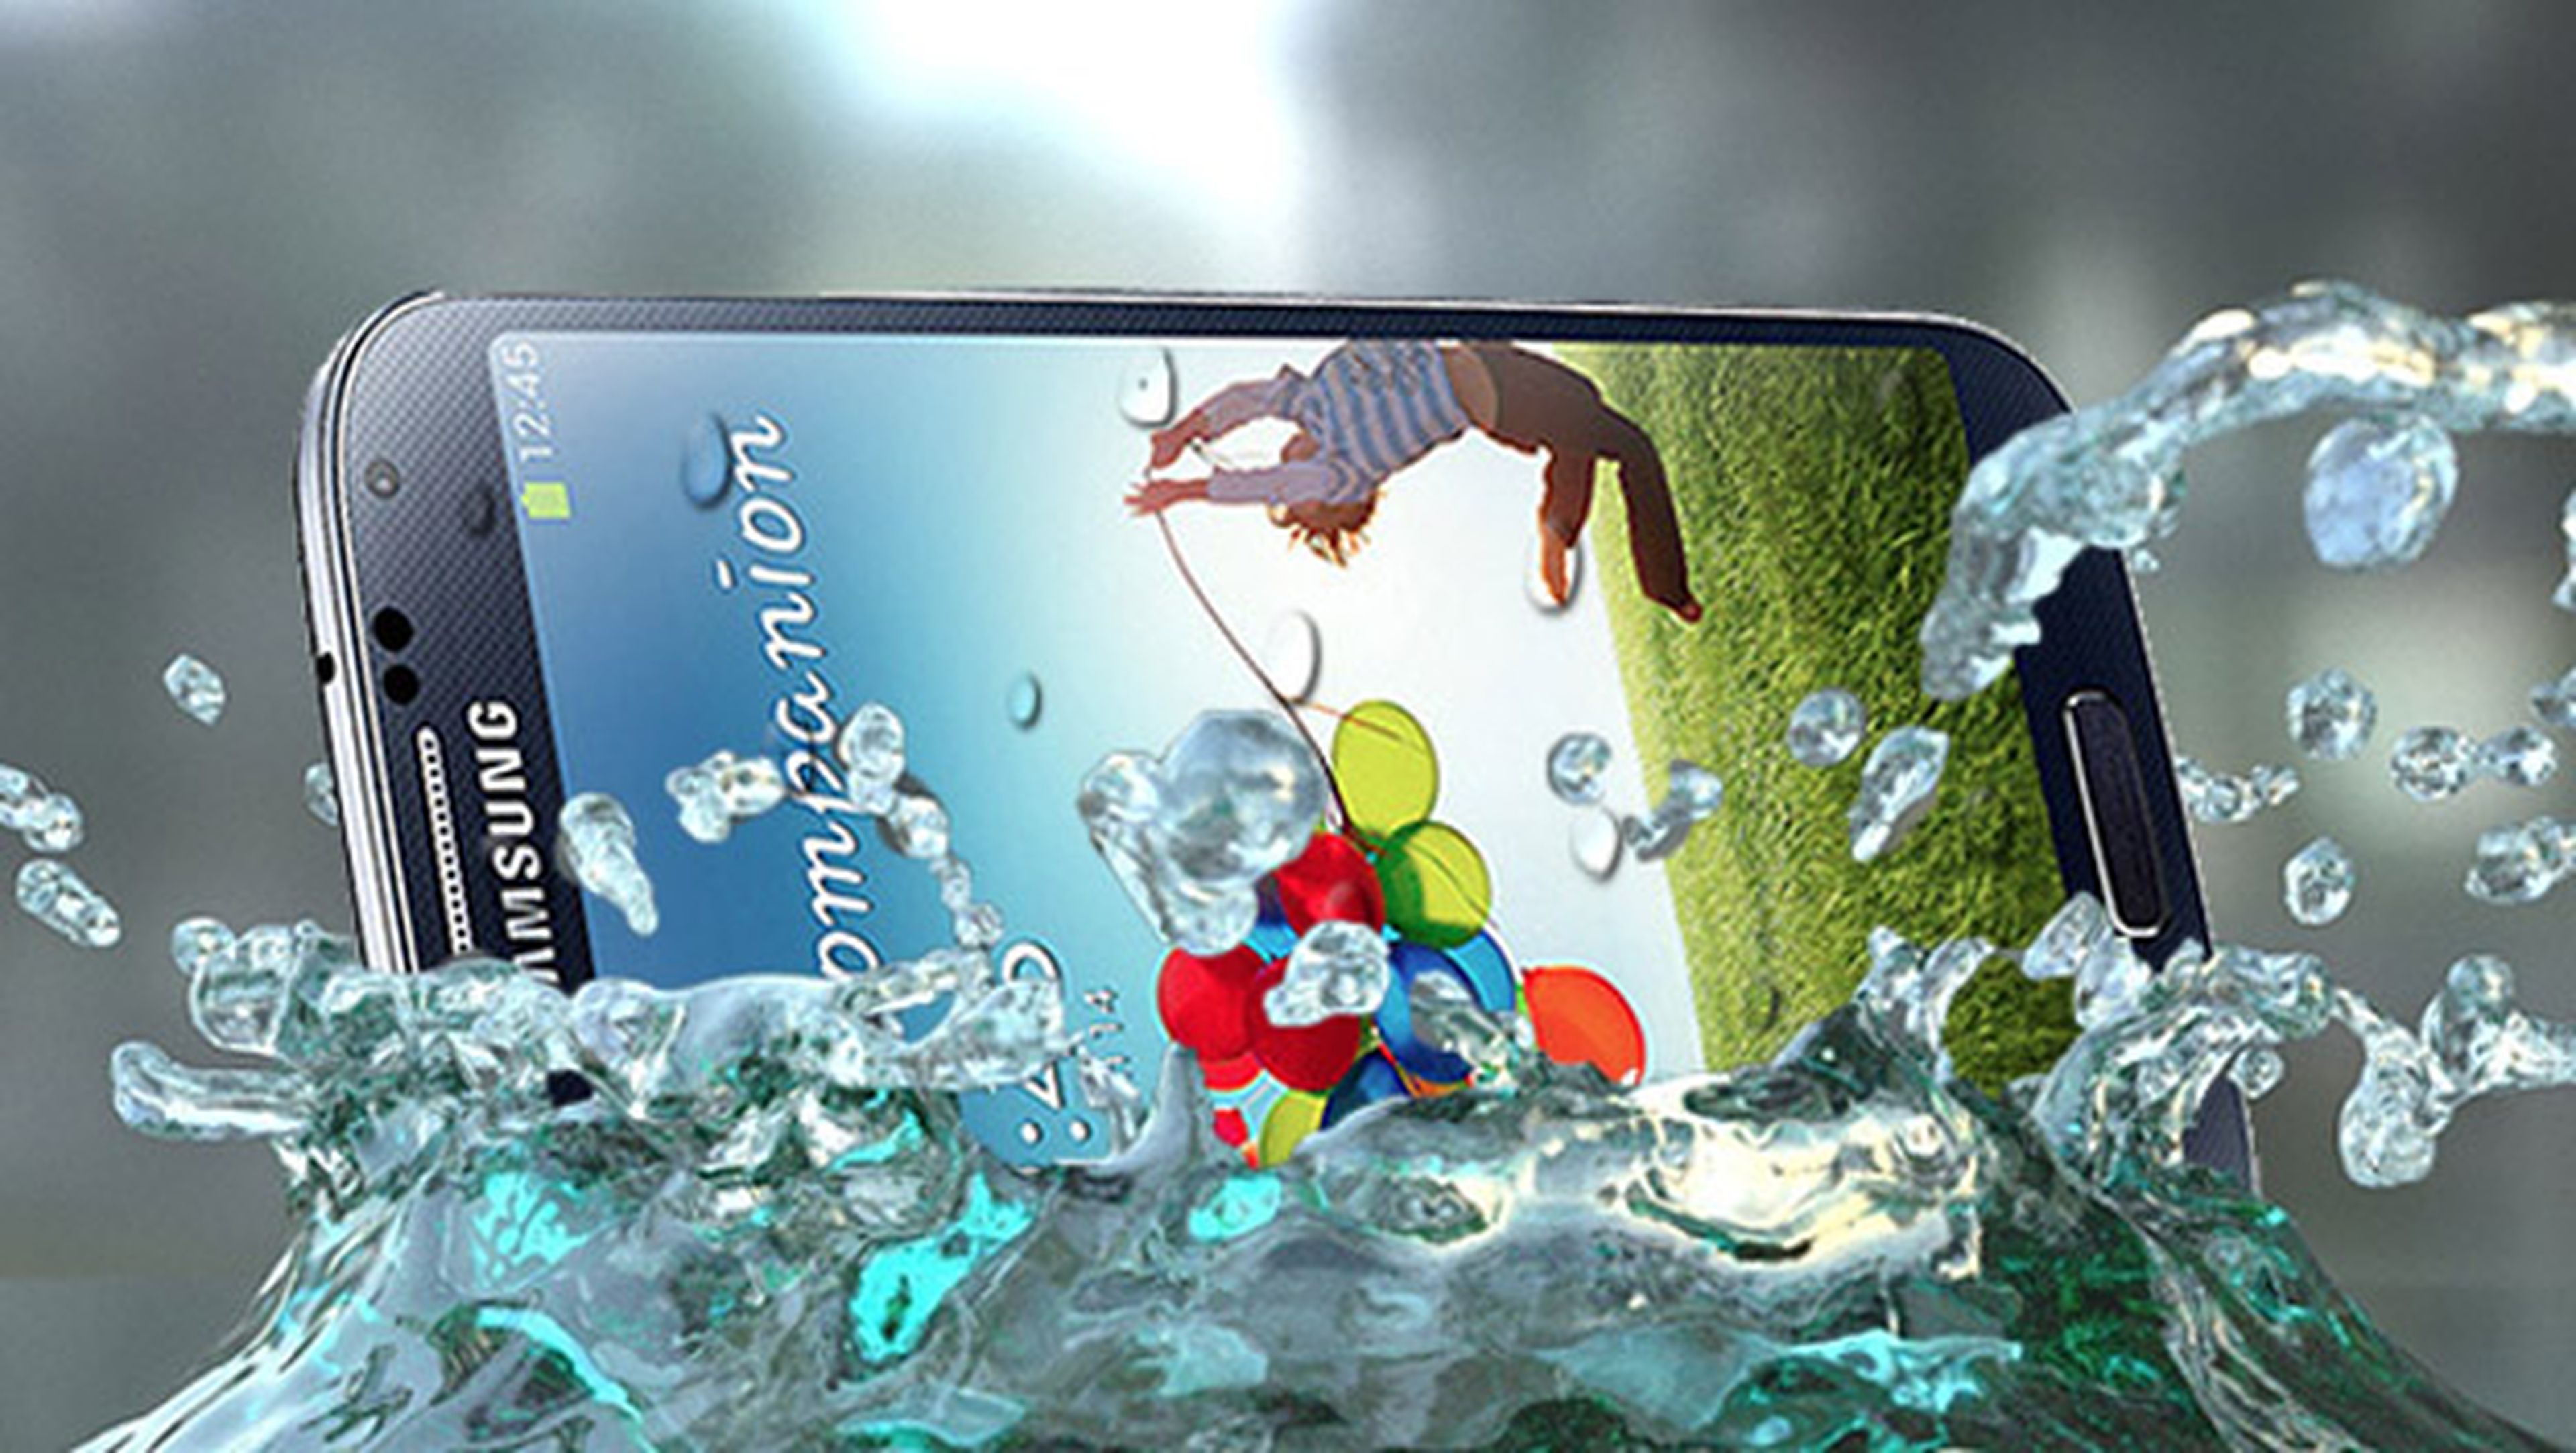 Samsung Galaxy S5 podría ser resistente al agua y polvo